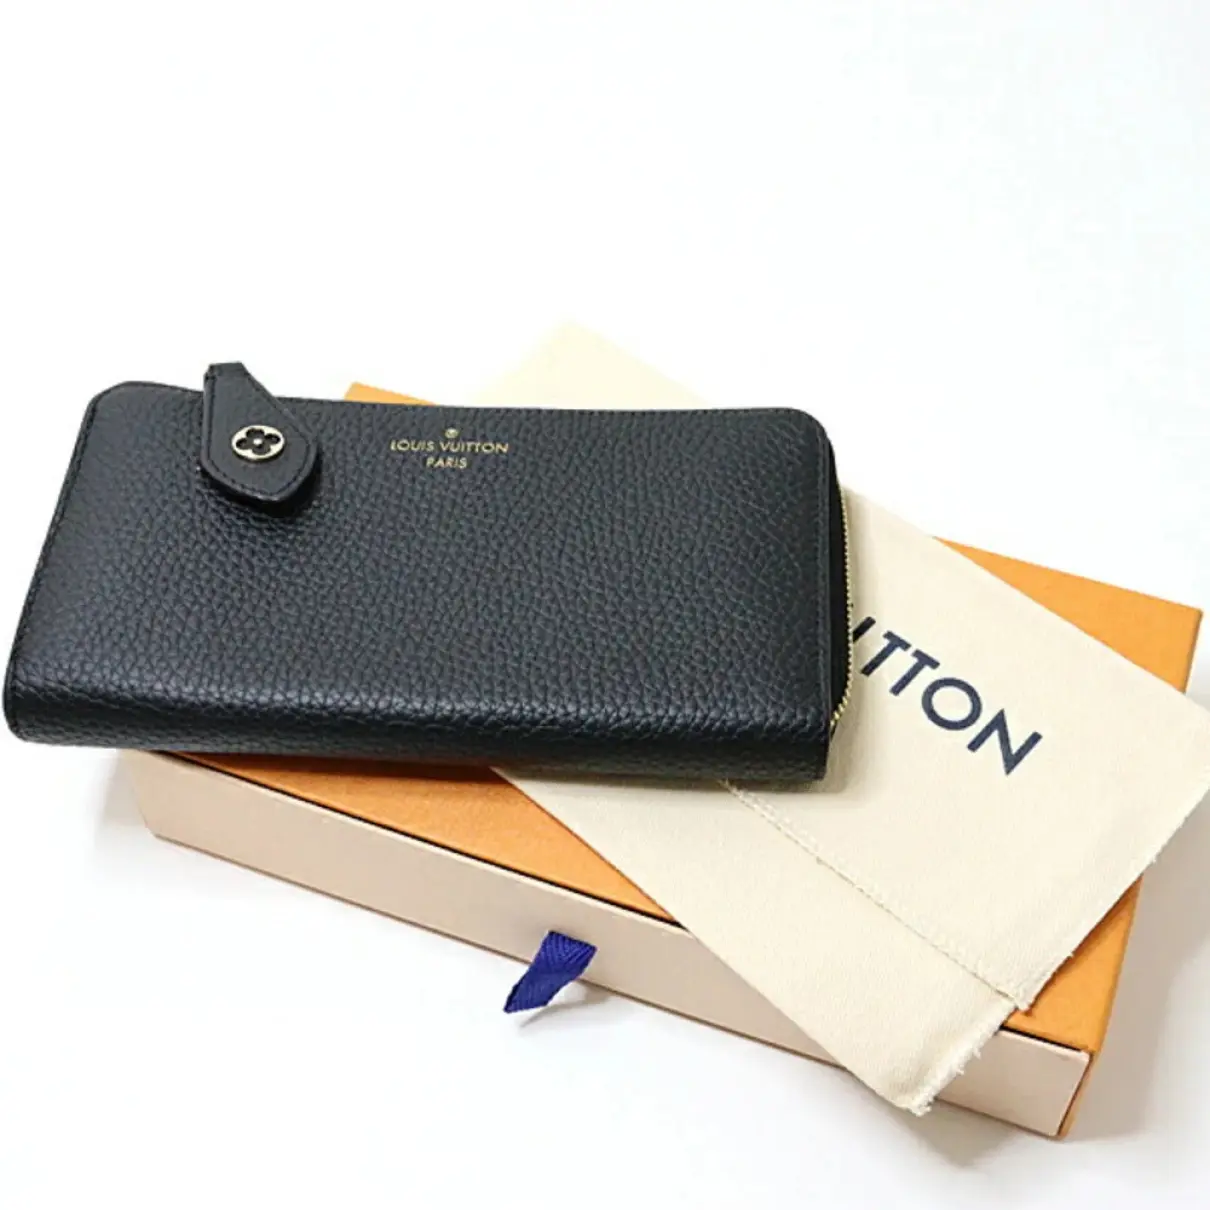 Buy Louis Vuitton Comète leather wallet online